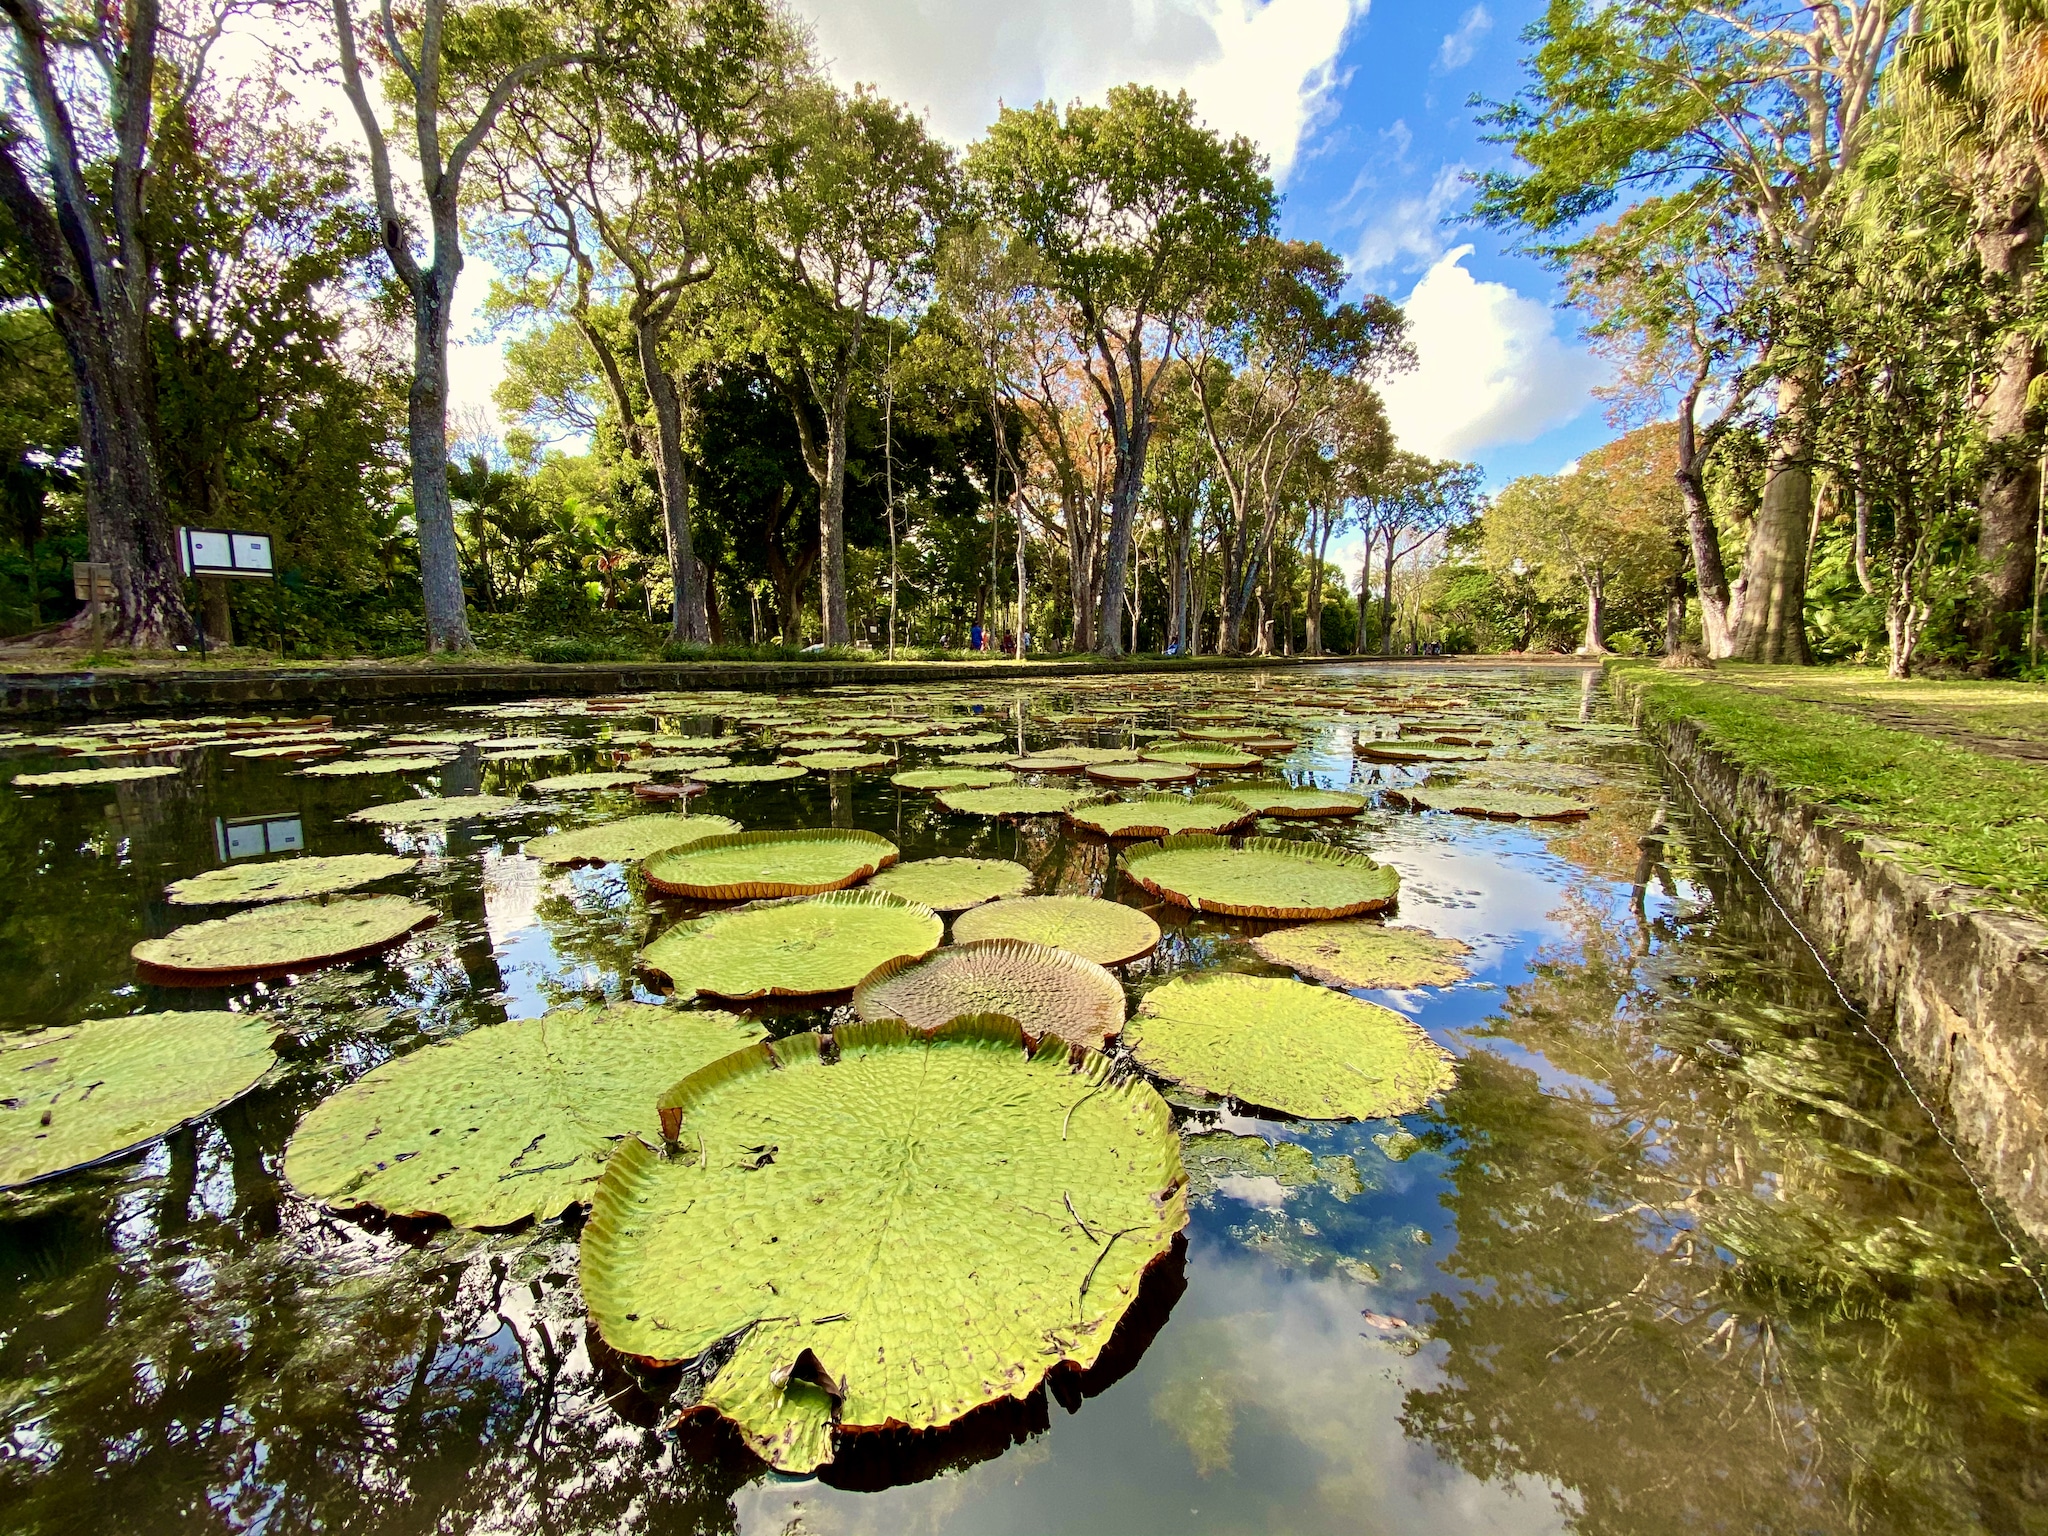 Der Teich mit den Riesenseerosen ist eine der wichtigsten Attraktionen im botanischen Garten von Mauritius.  Botanischer Garten Mauritius Tipps Erfahrungen Pampelmousses Sir Seewoosagur Ramgoolam